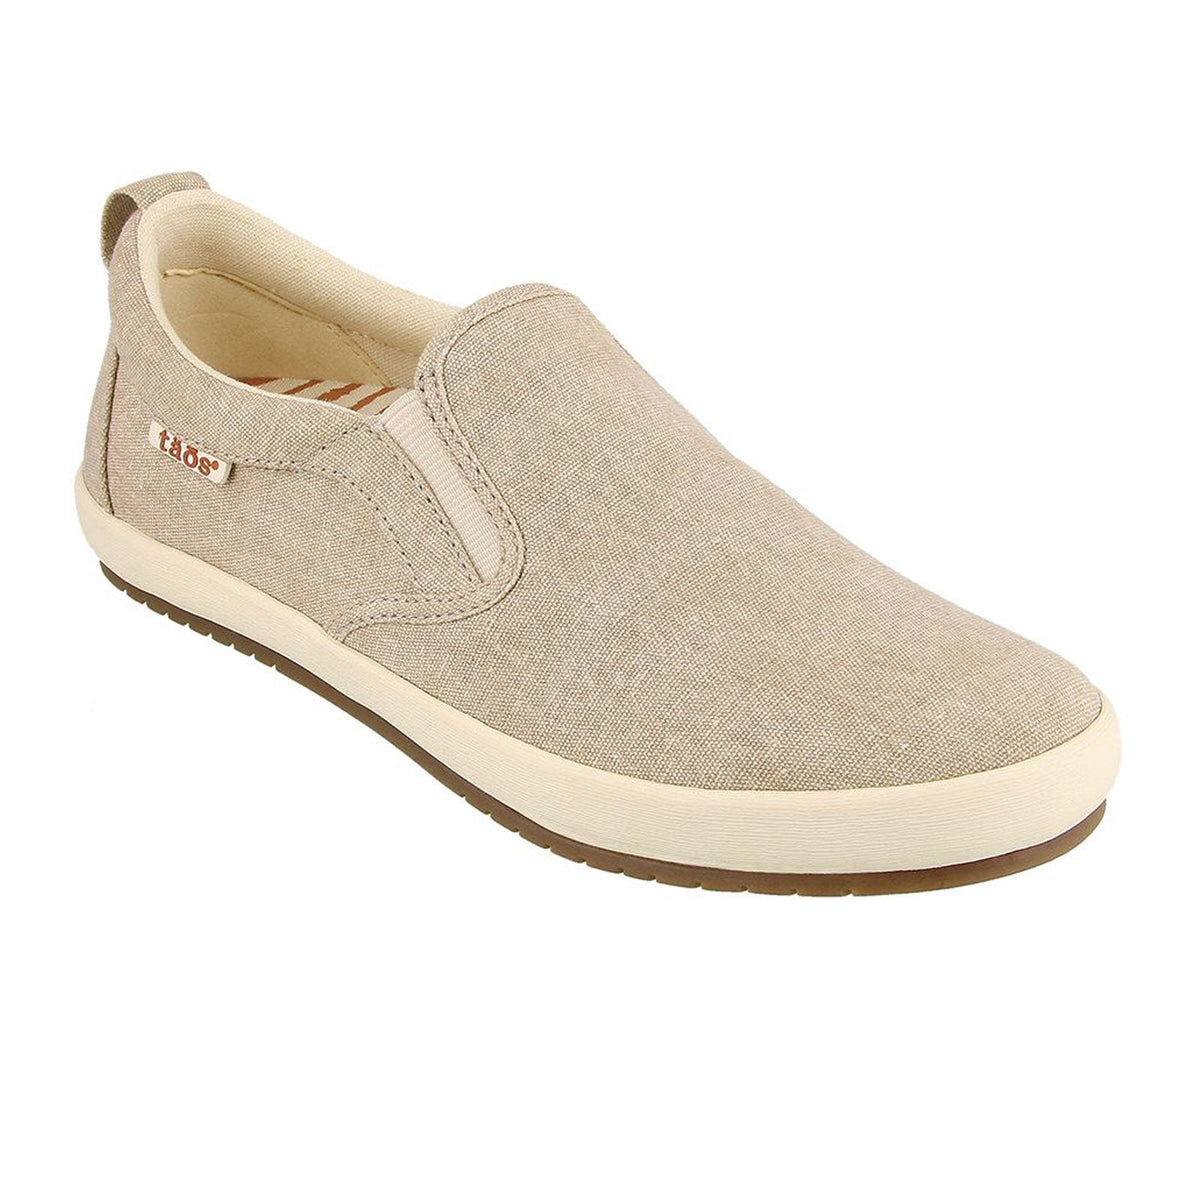 Taos Dandy Slip On Sneaker (Women) - Oat Washed Canvas – The Heel Shoe ...